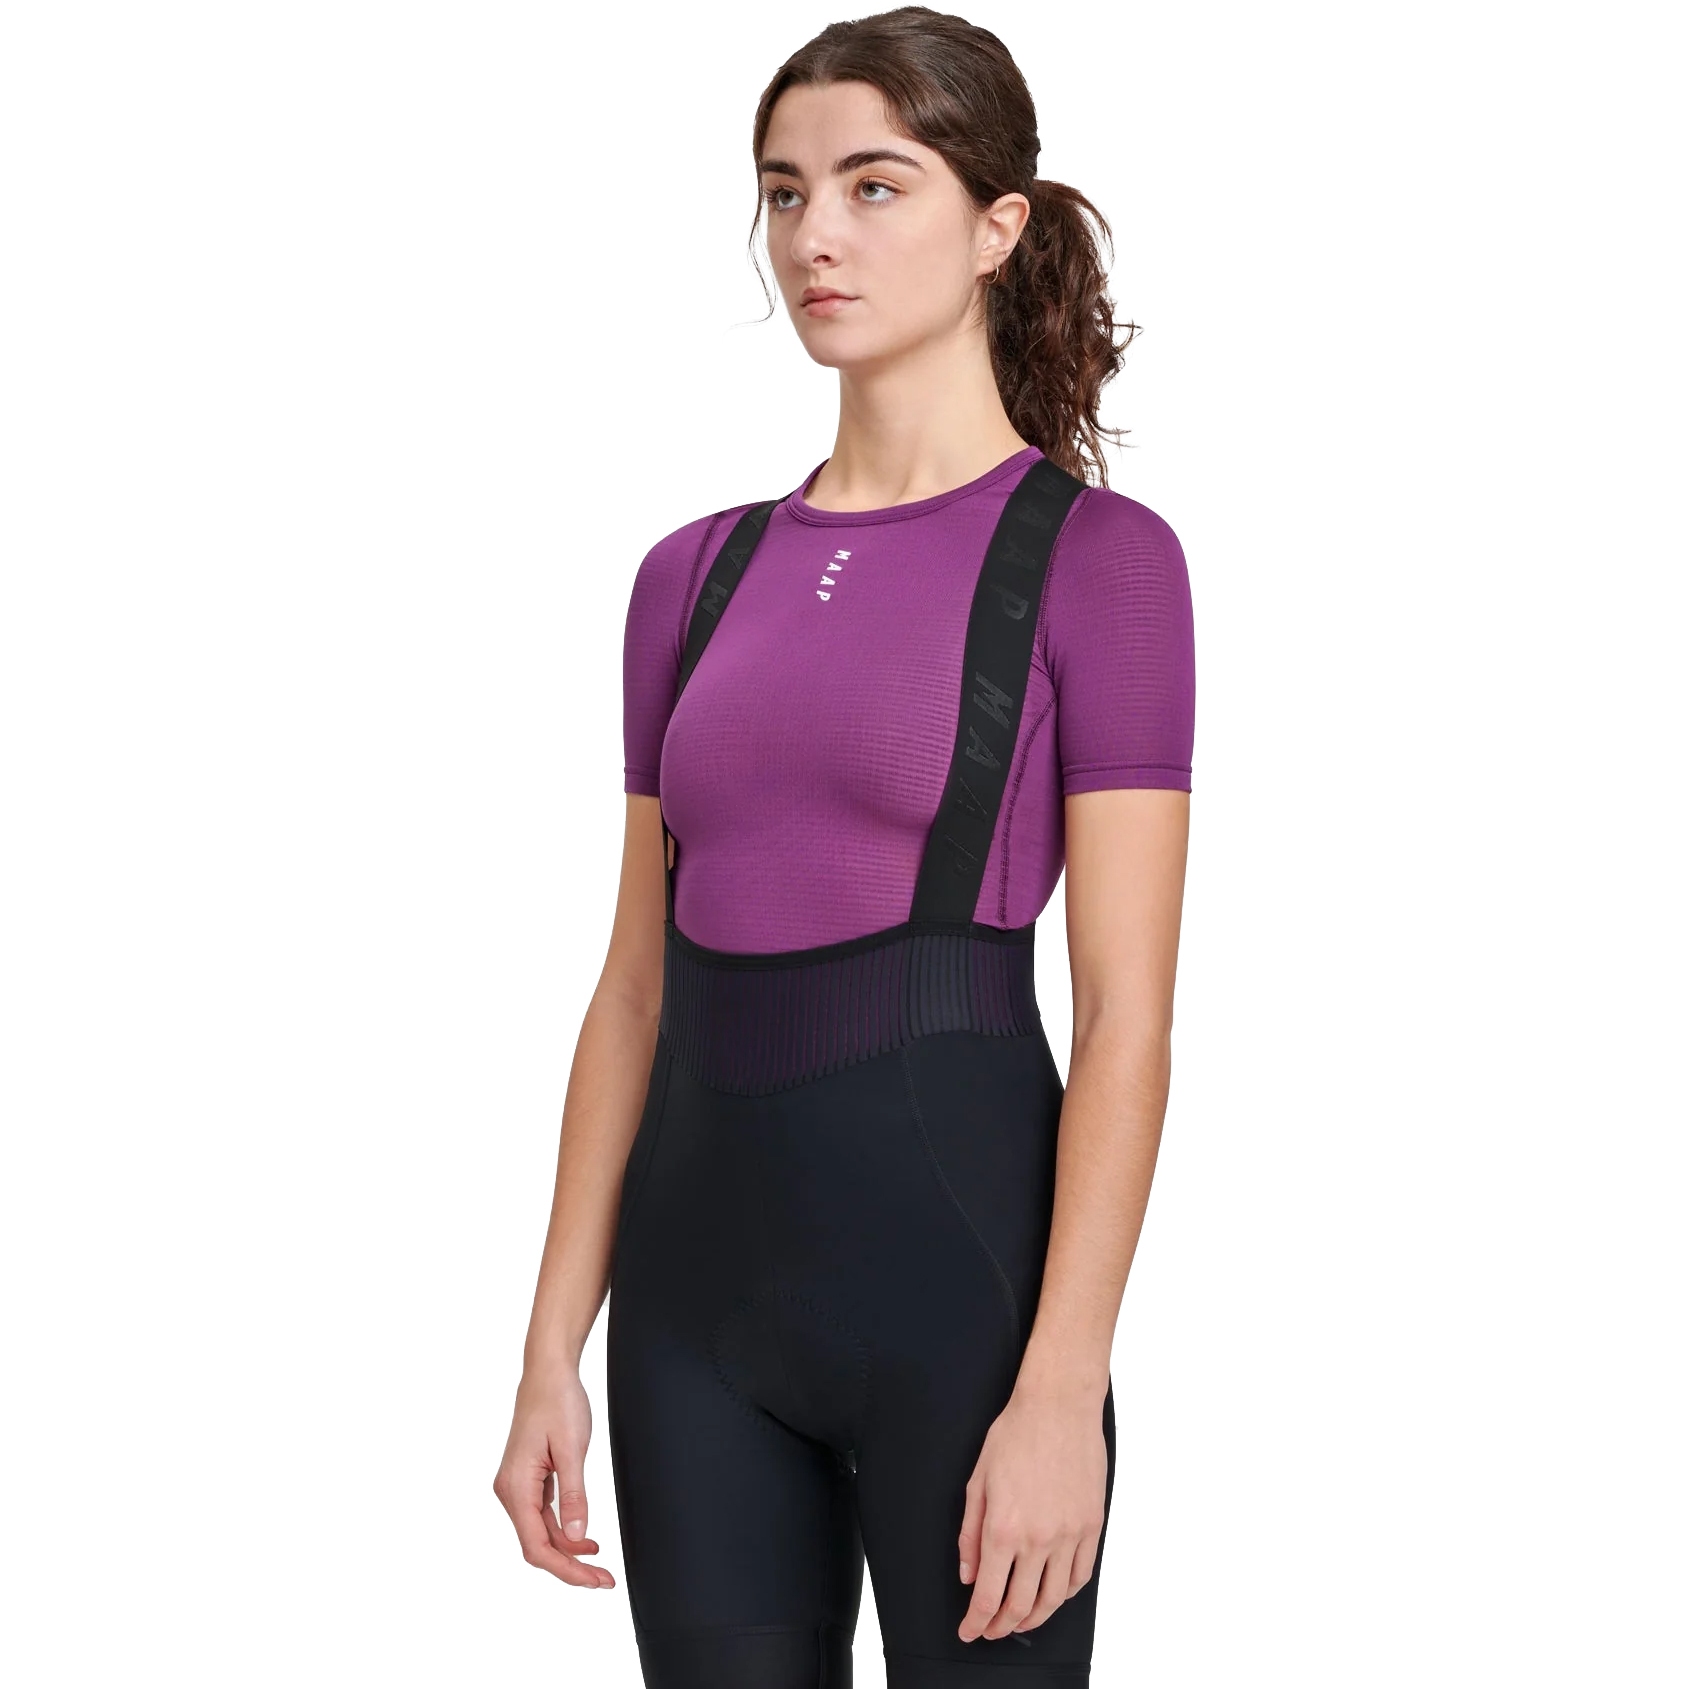 Produktbild von MAAP Thermal Unterhemd kurzarm Damen - violet